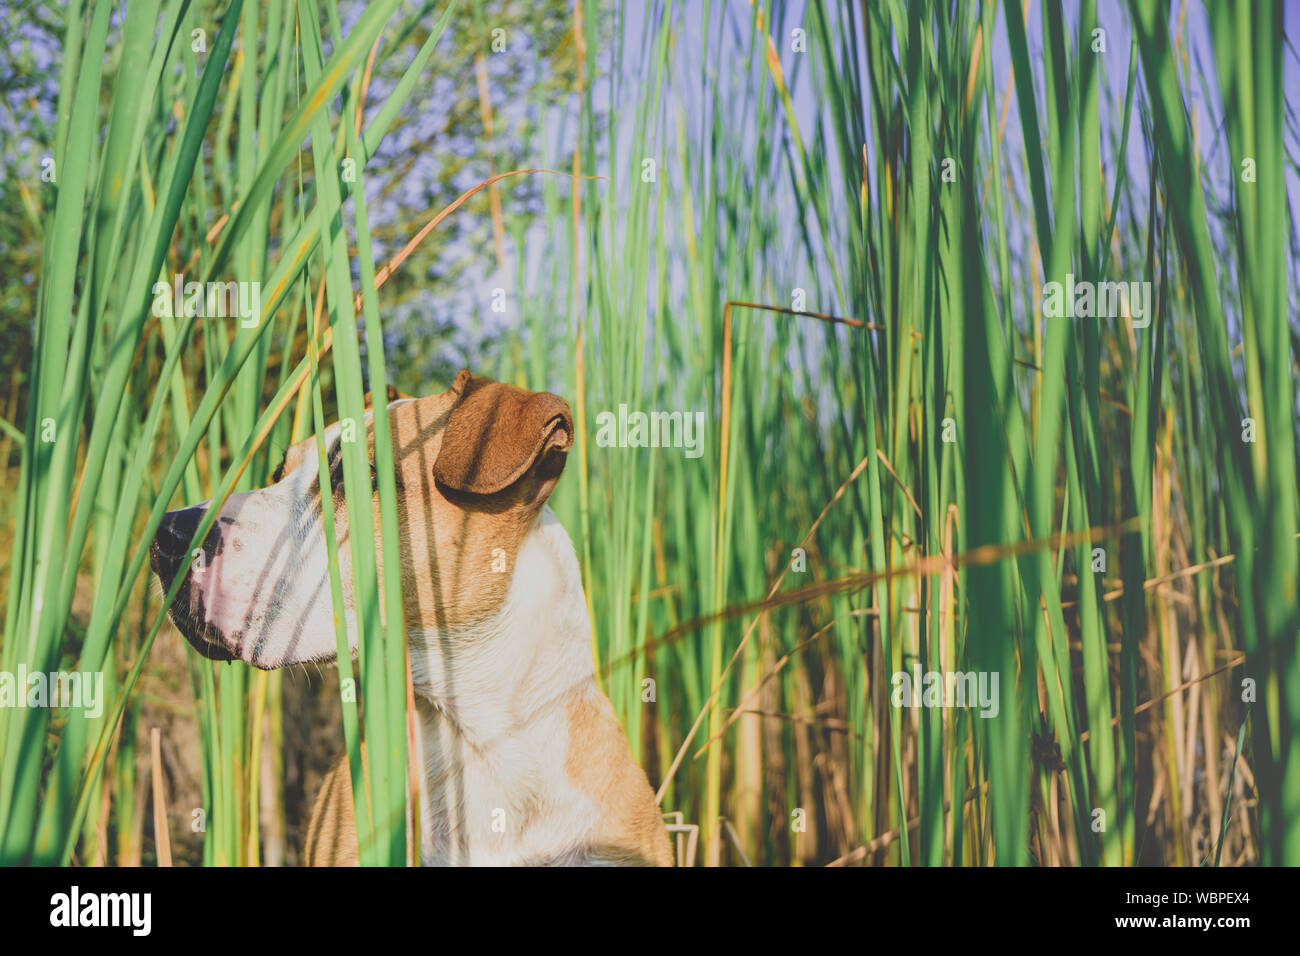 Dog in tall grass vert, yeux cachés. Funny dog fait semblant de se cacher derrière les herbes dans la belle nature de l'été, Peek-a-boo concept Banque D'Images